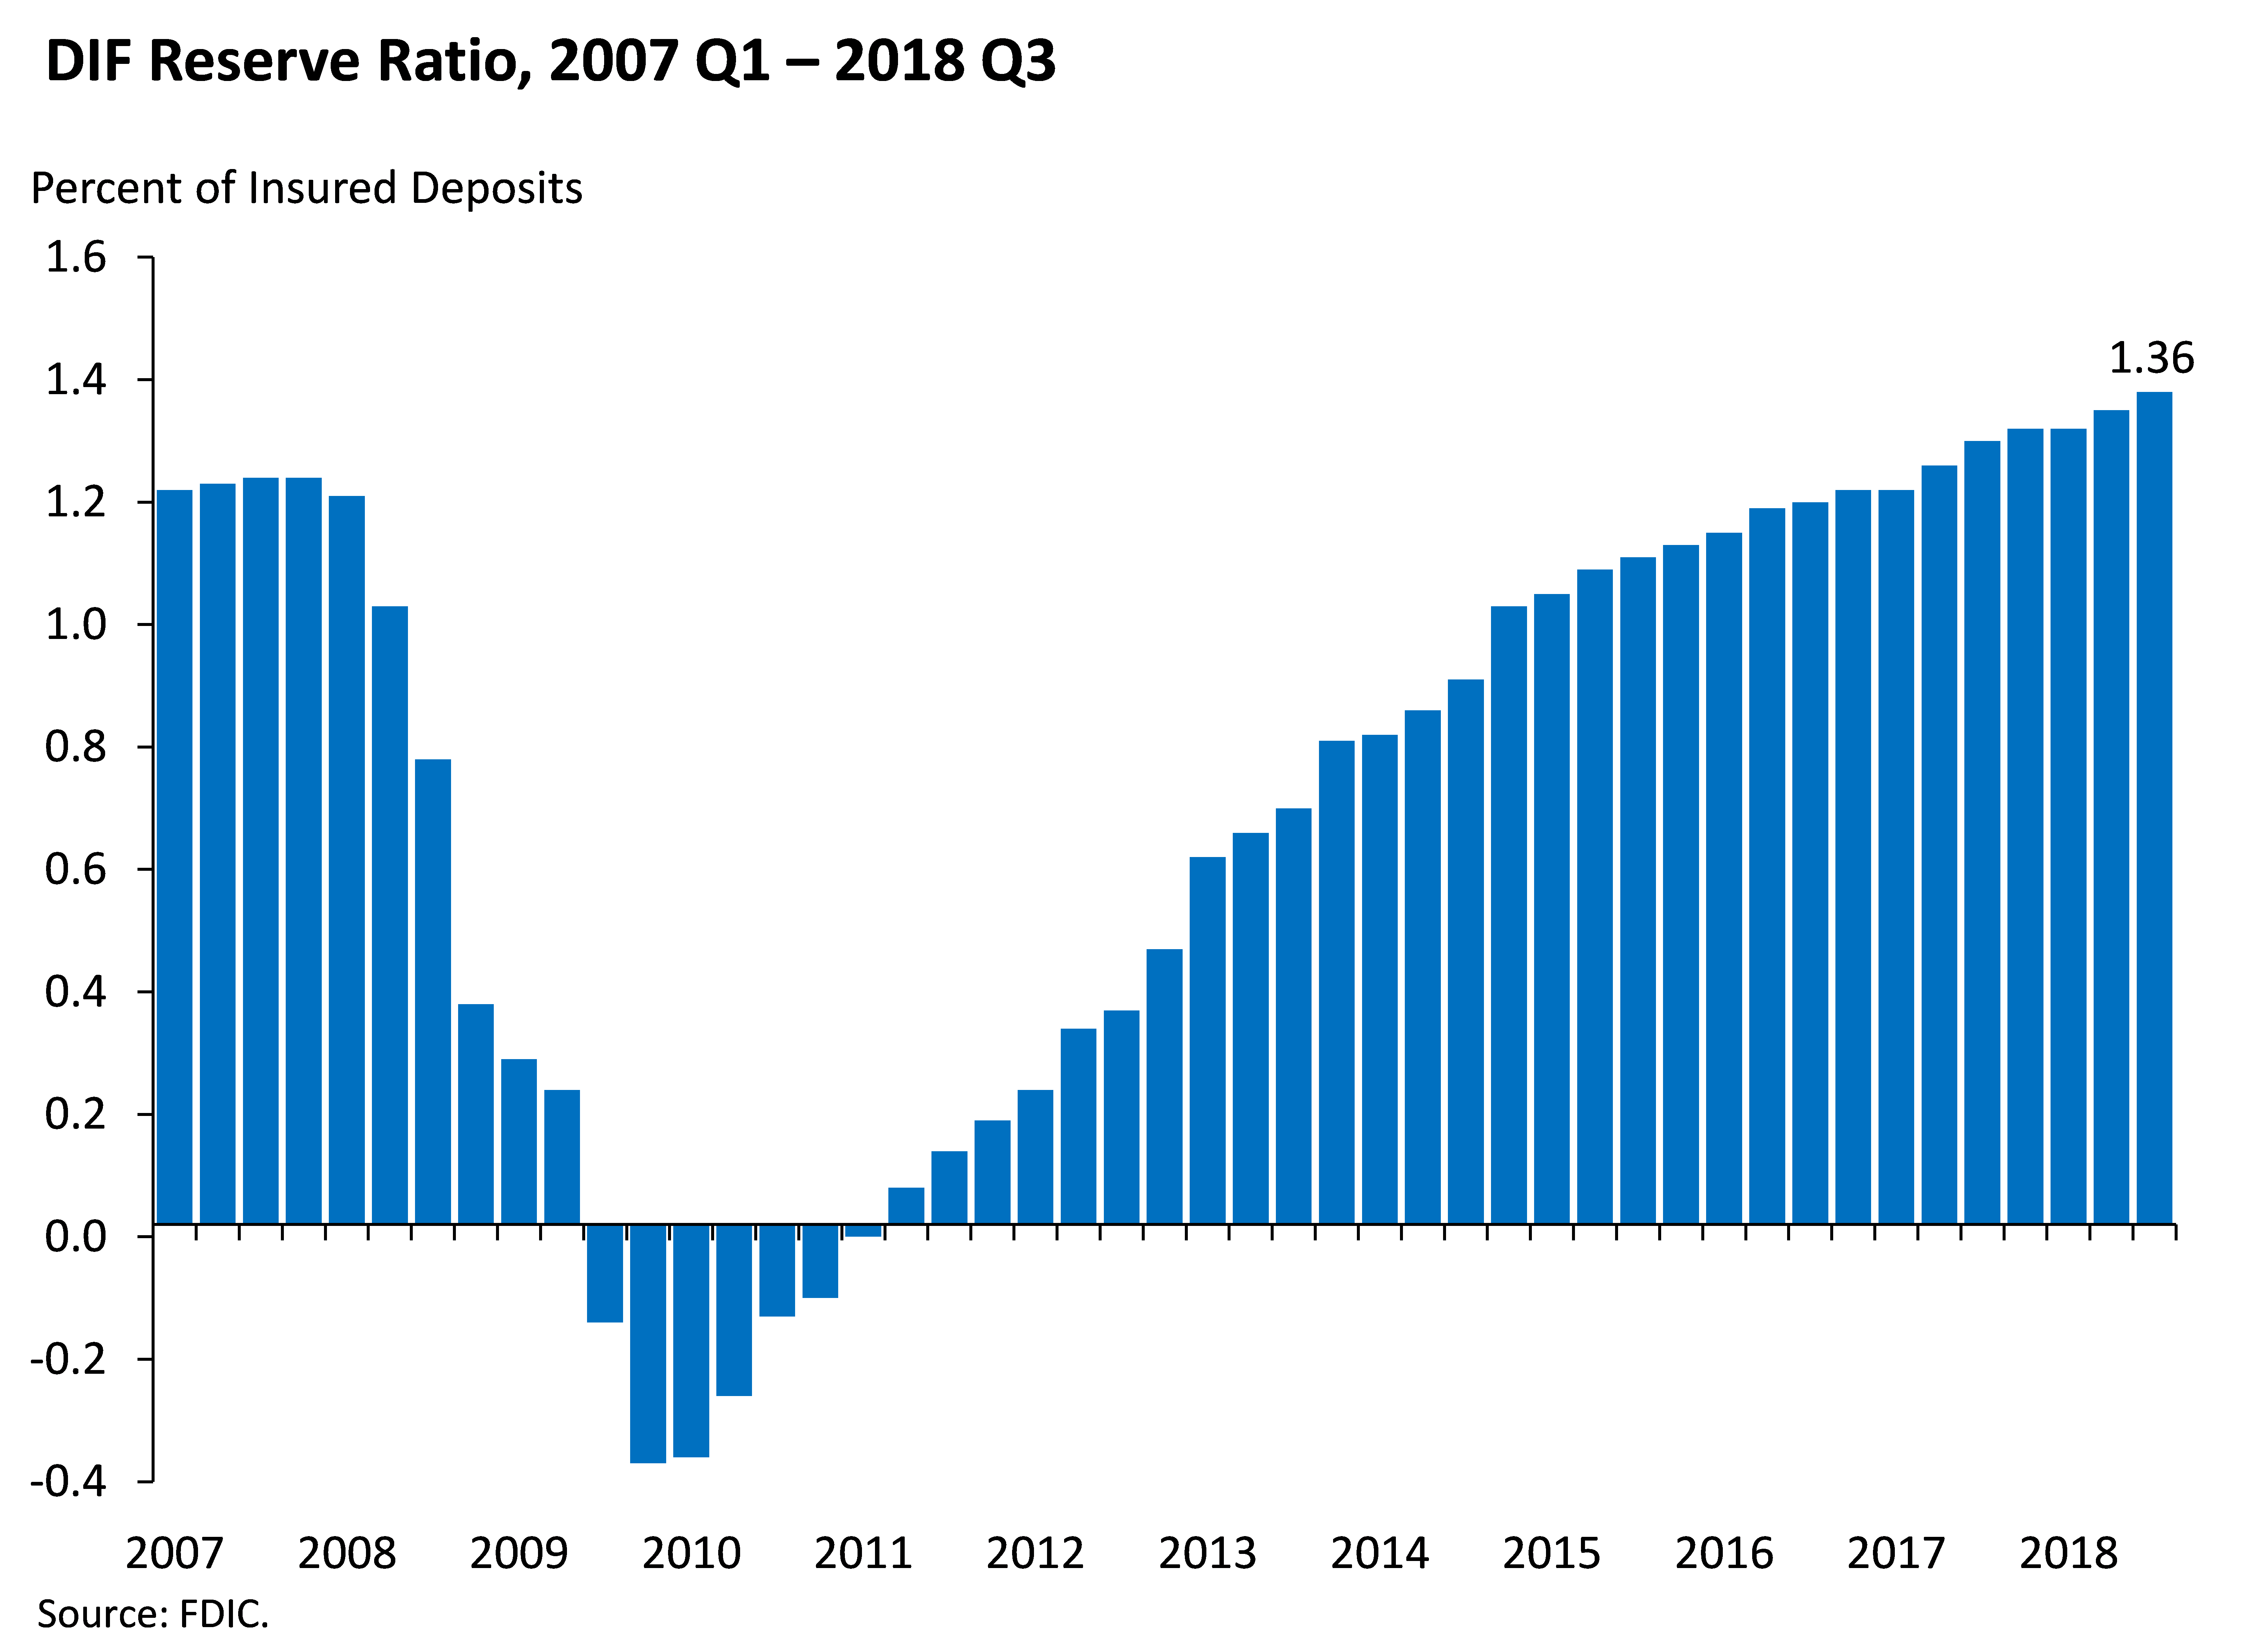 Chart 9: DIF Reserve ratio, 2007 Q1 - 2018 Q3